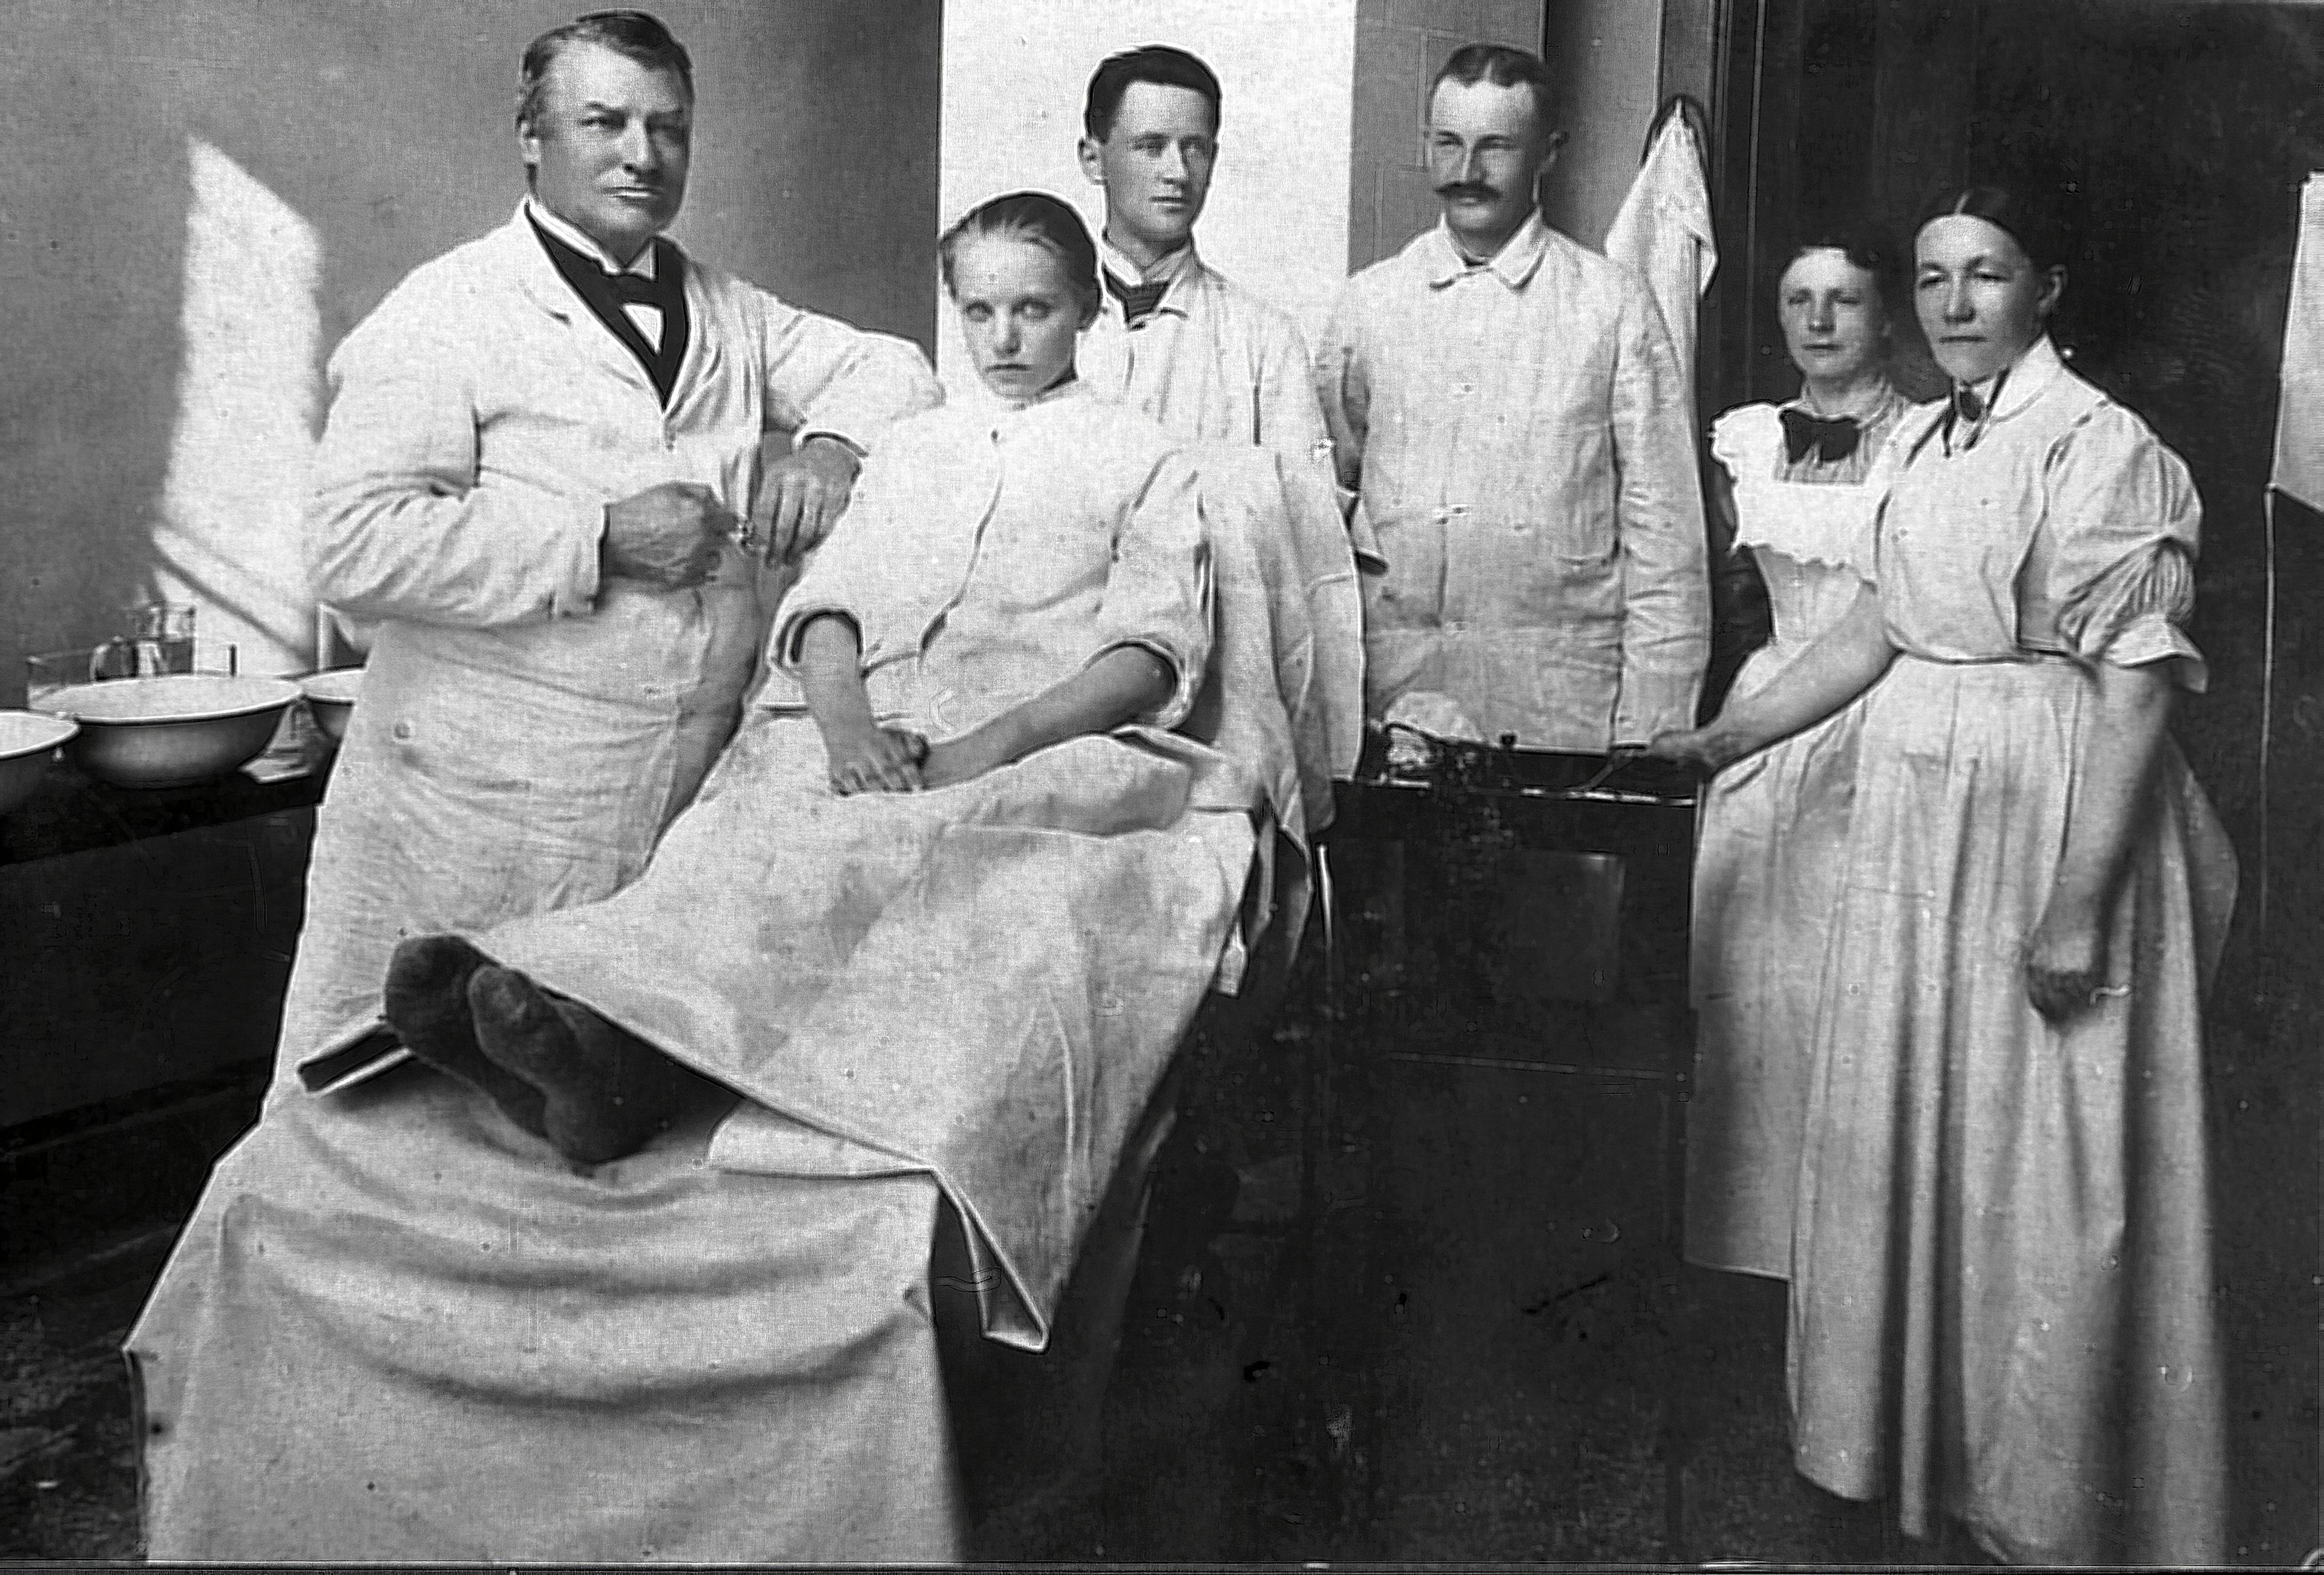 En ung pige gøres klar til operation. P.W. Heiberg ses længst til venstre. Længst til højre ses hans oversygeplejerske gennem mange år, frøken Olsen Nørskov (Viborg Museum).